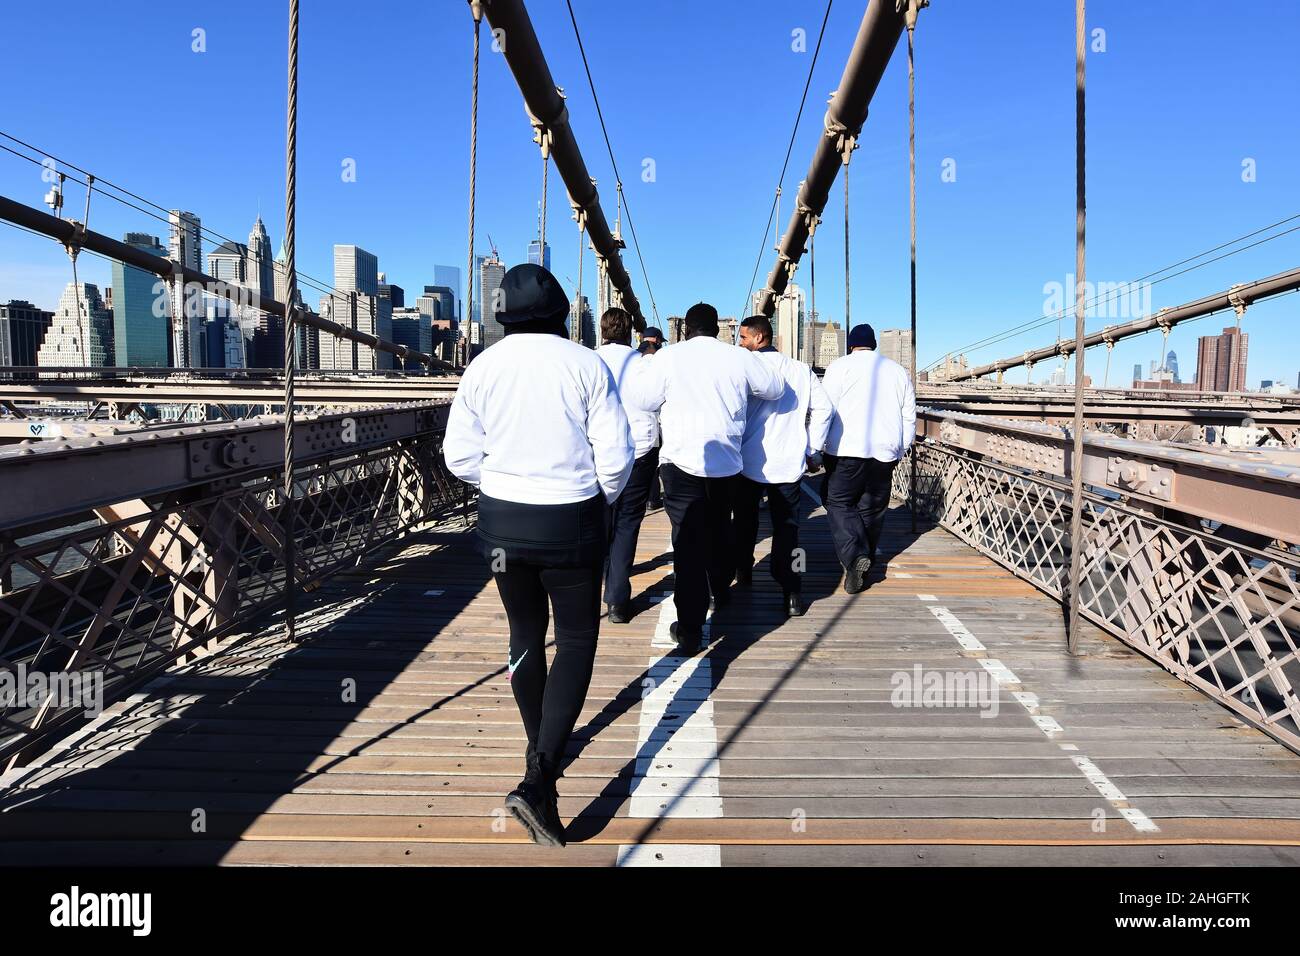 New York, NY, USA - Le 30 novembre 2019. L'expérience de New York. La santé des hommes sur mars Pont de Brooklyn, New York. Banque D'Images